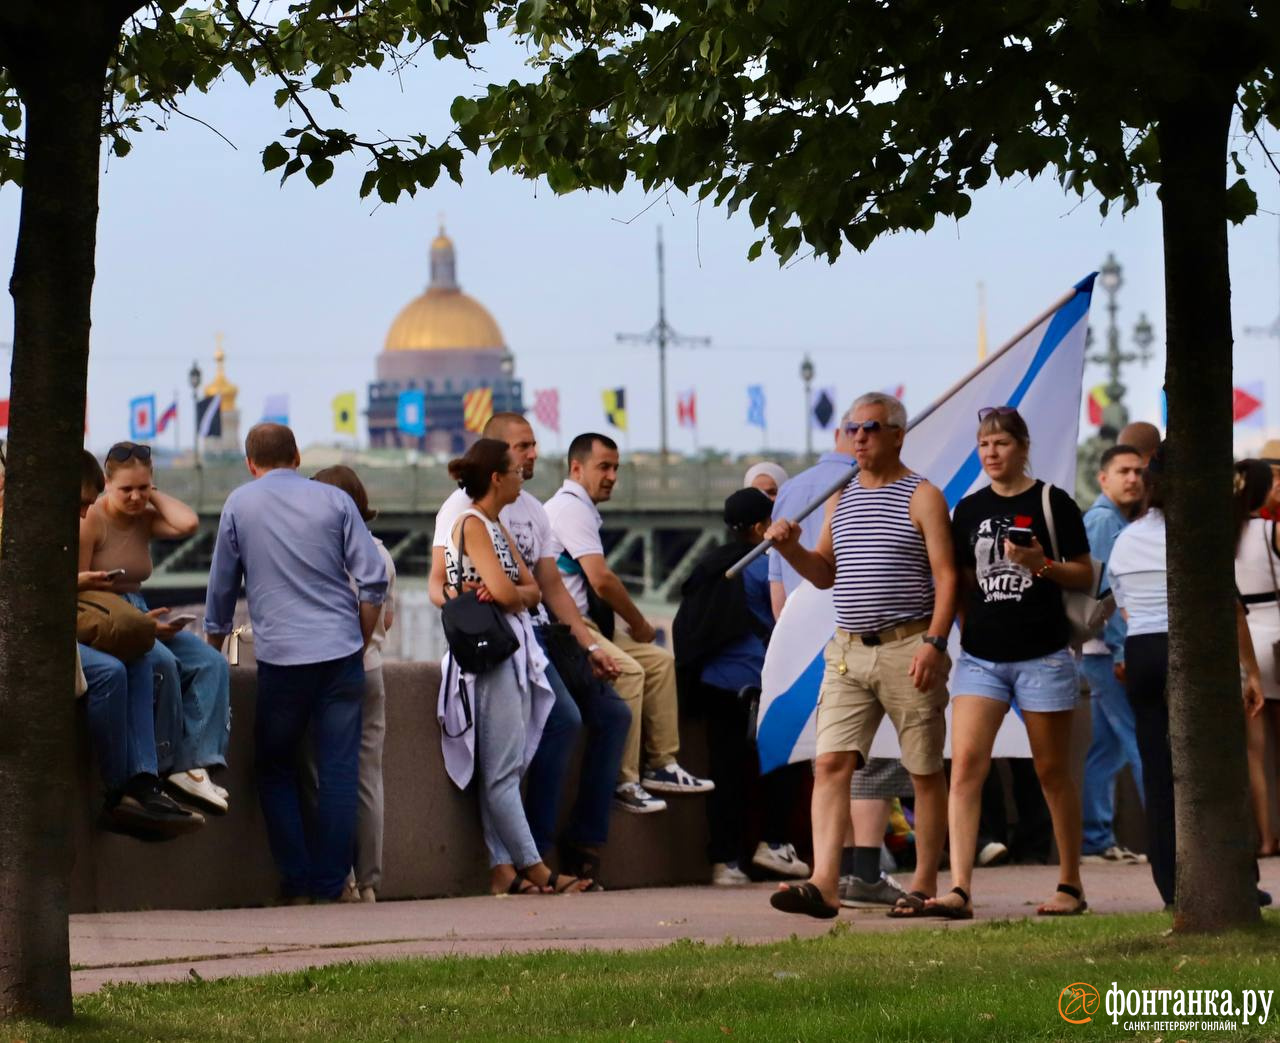 Солнце, корабли, девушки: «Фонтанка» показывает, как прошел Главный военно-морской парад в Петербурге